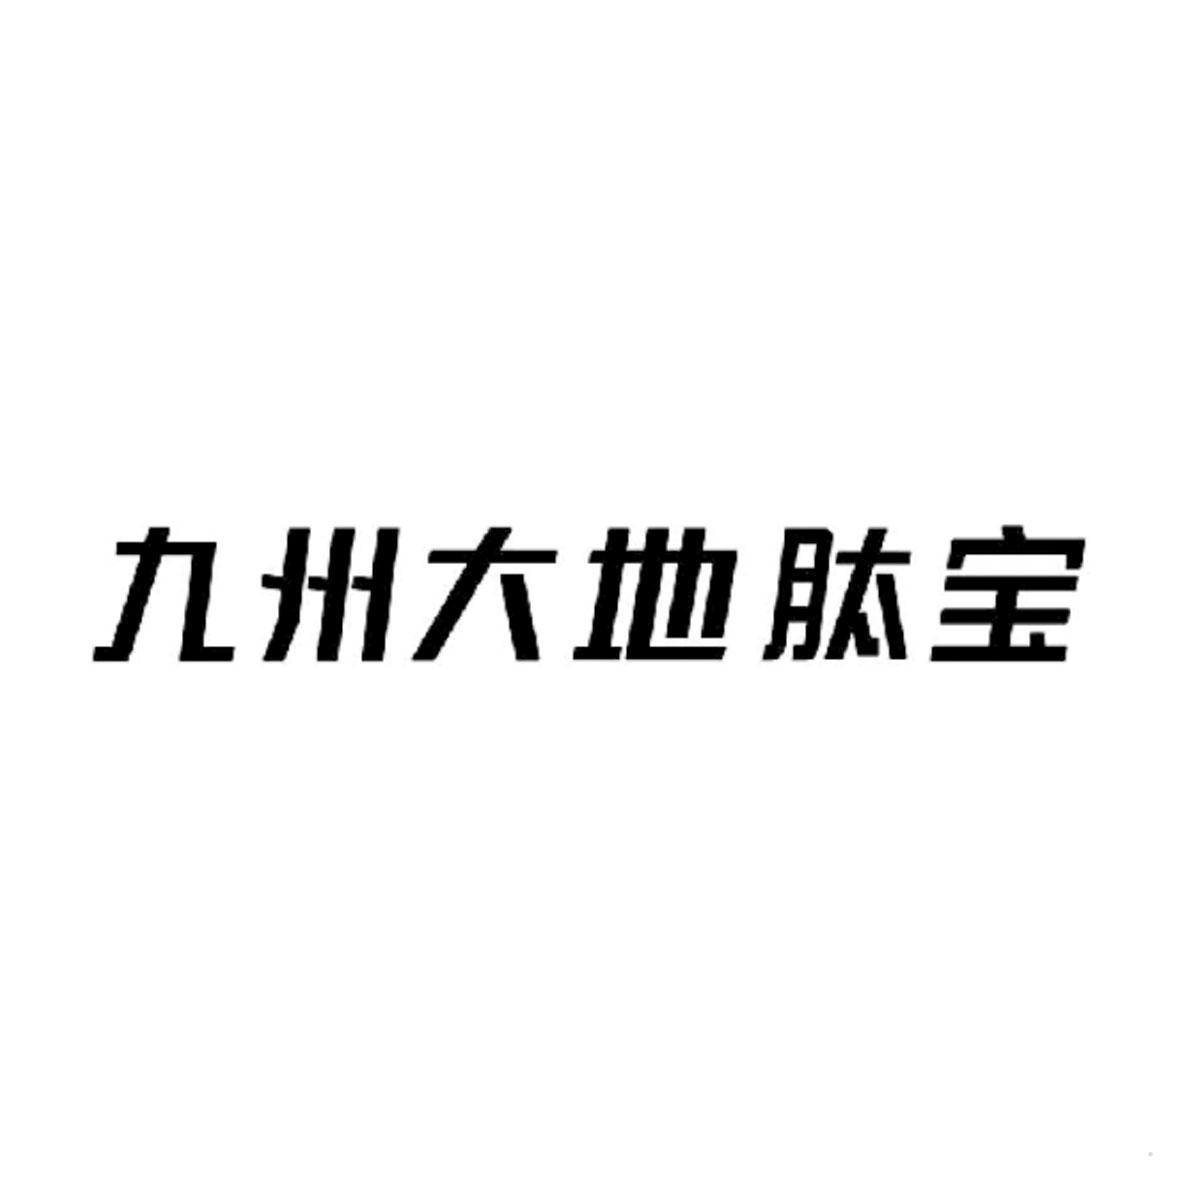 九州大地肽宝logo